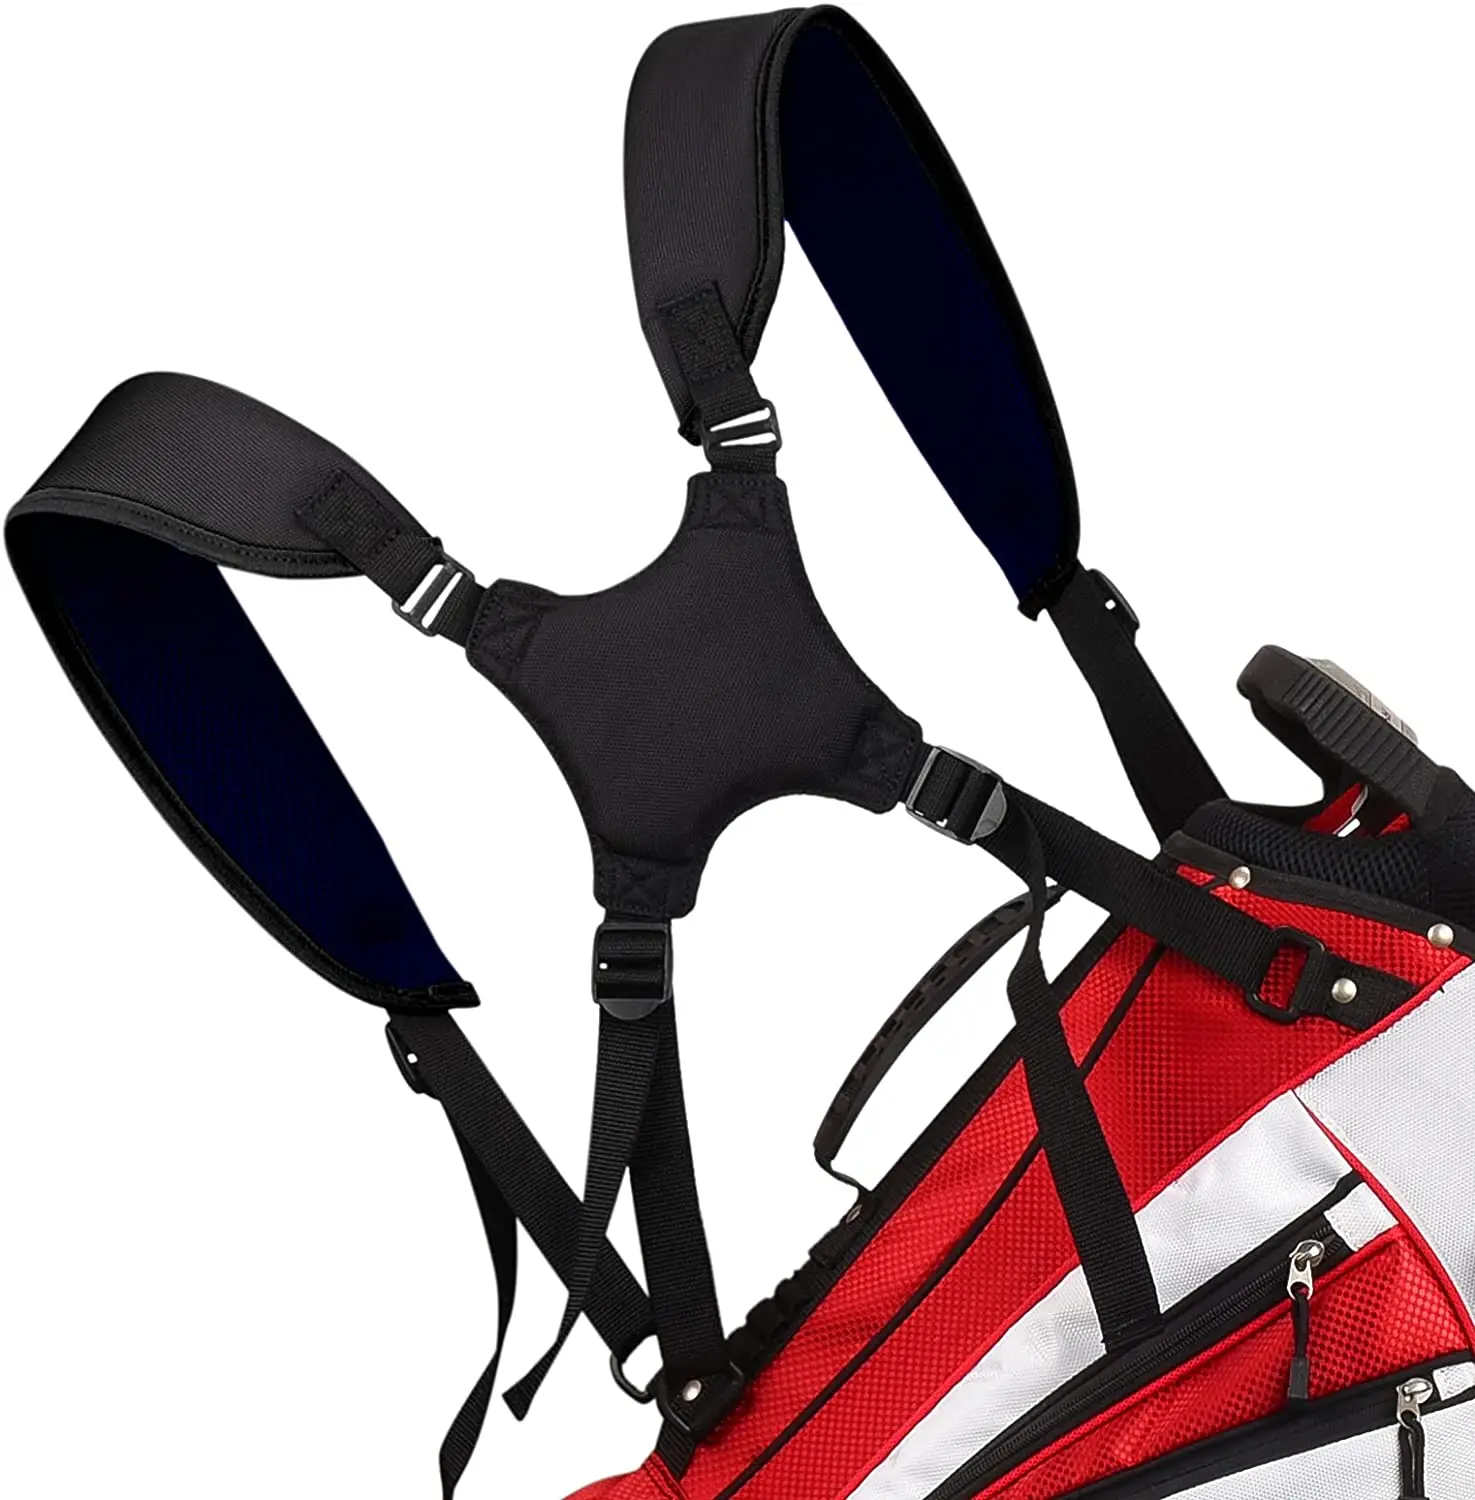 

Golf Bag Strap Replacement Comfort Shoulder Adjustable Strap Padded Backpack Golf Bag Accessories, Black